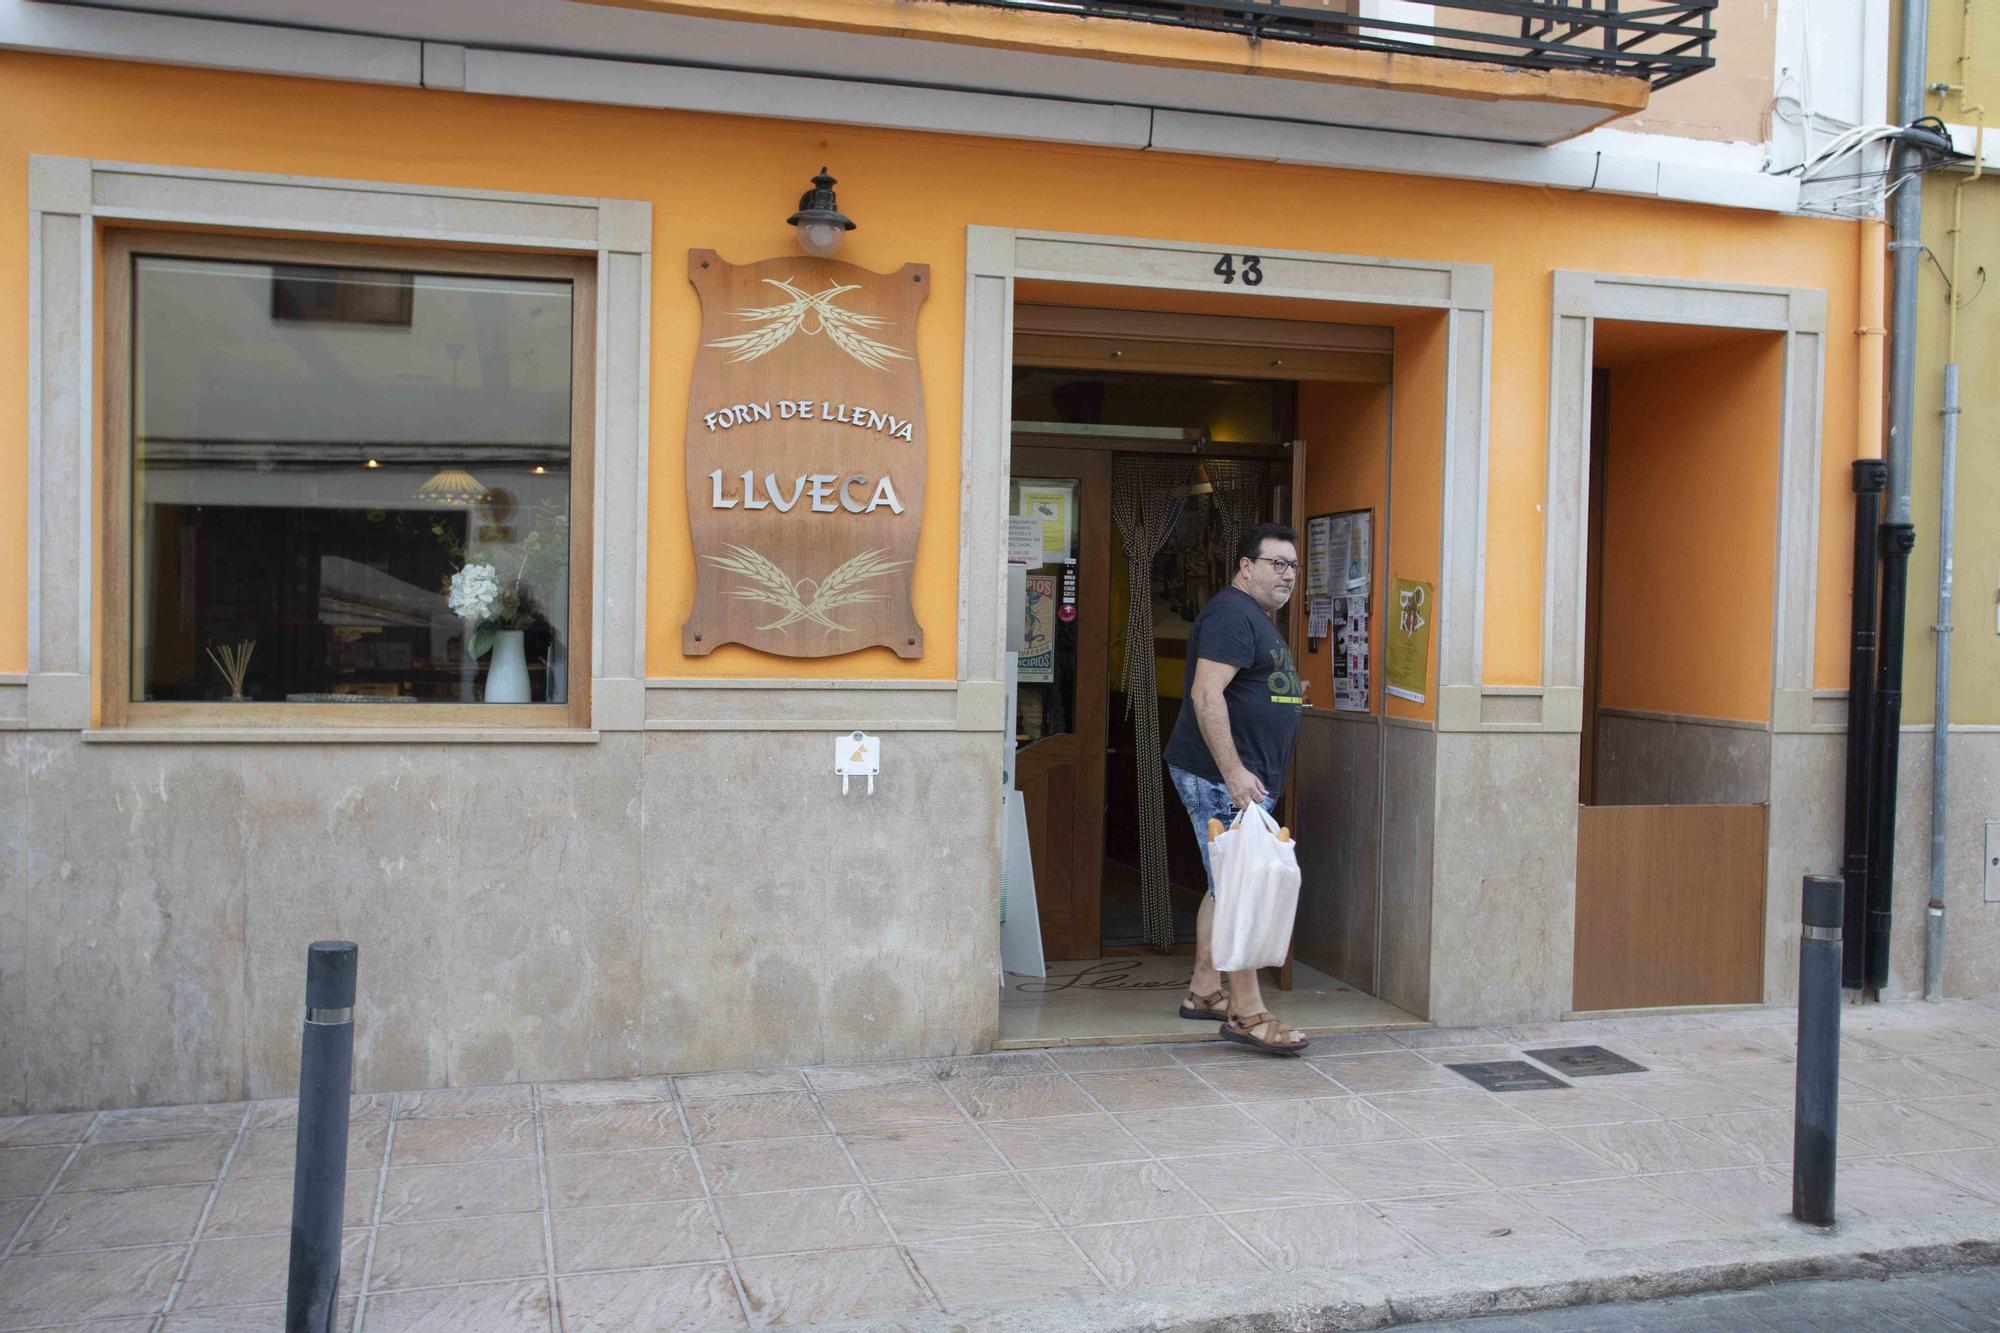 Cierra un histórico horno en Xàtiva después de 61 años abierto - Levante-EMV